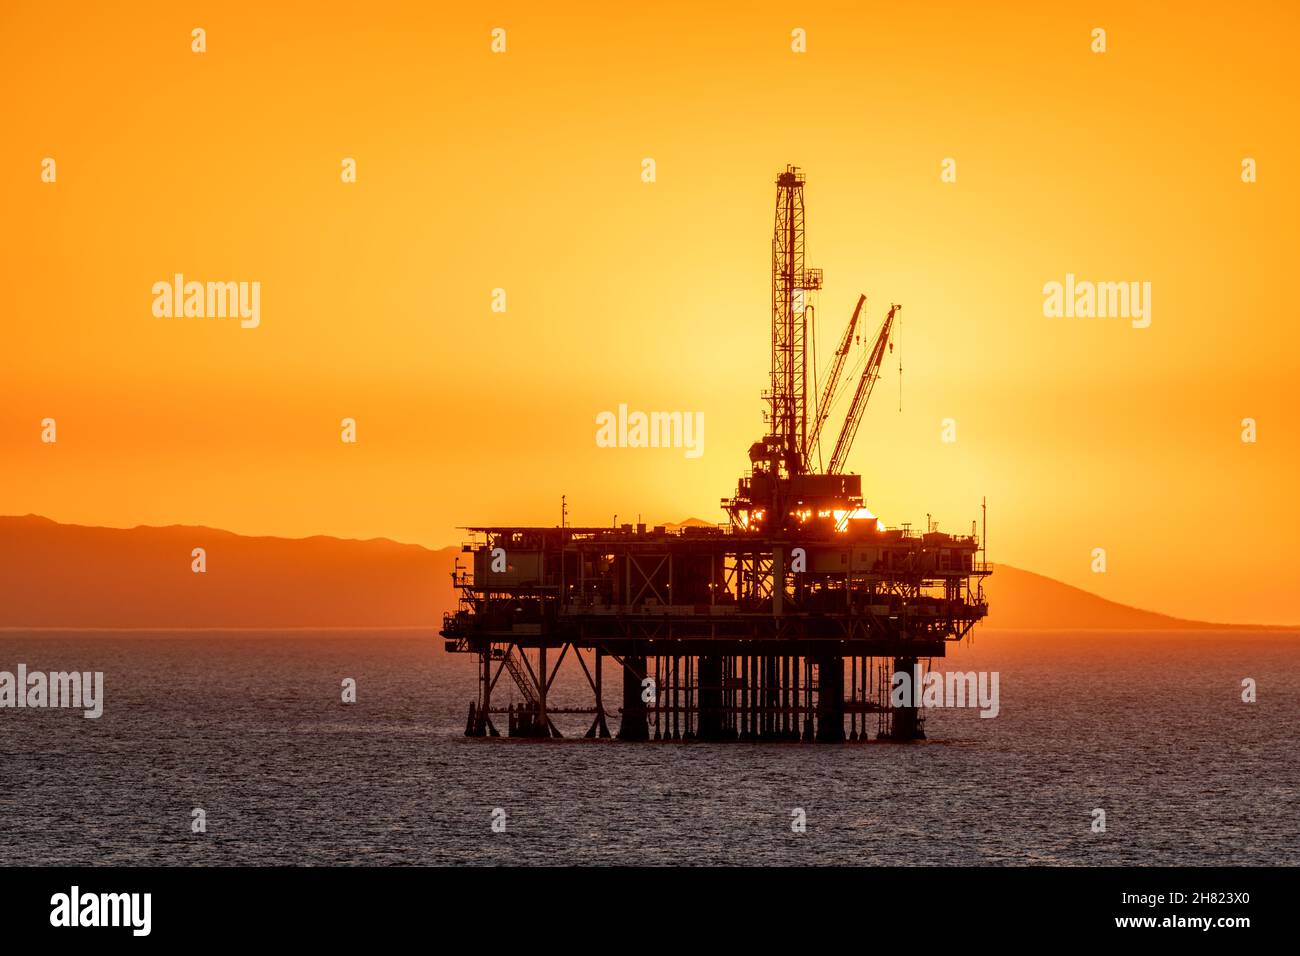 Piattaforma petrolifera offshore al largo della costa californiana contro un cielo orange, come il sole tramonta dietro il carro. Foto Stock